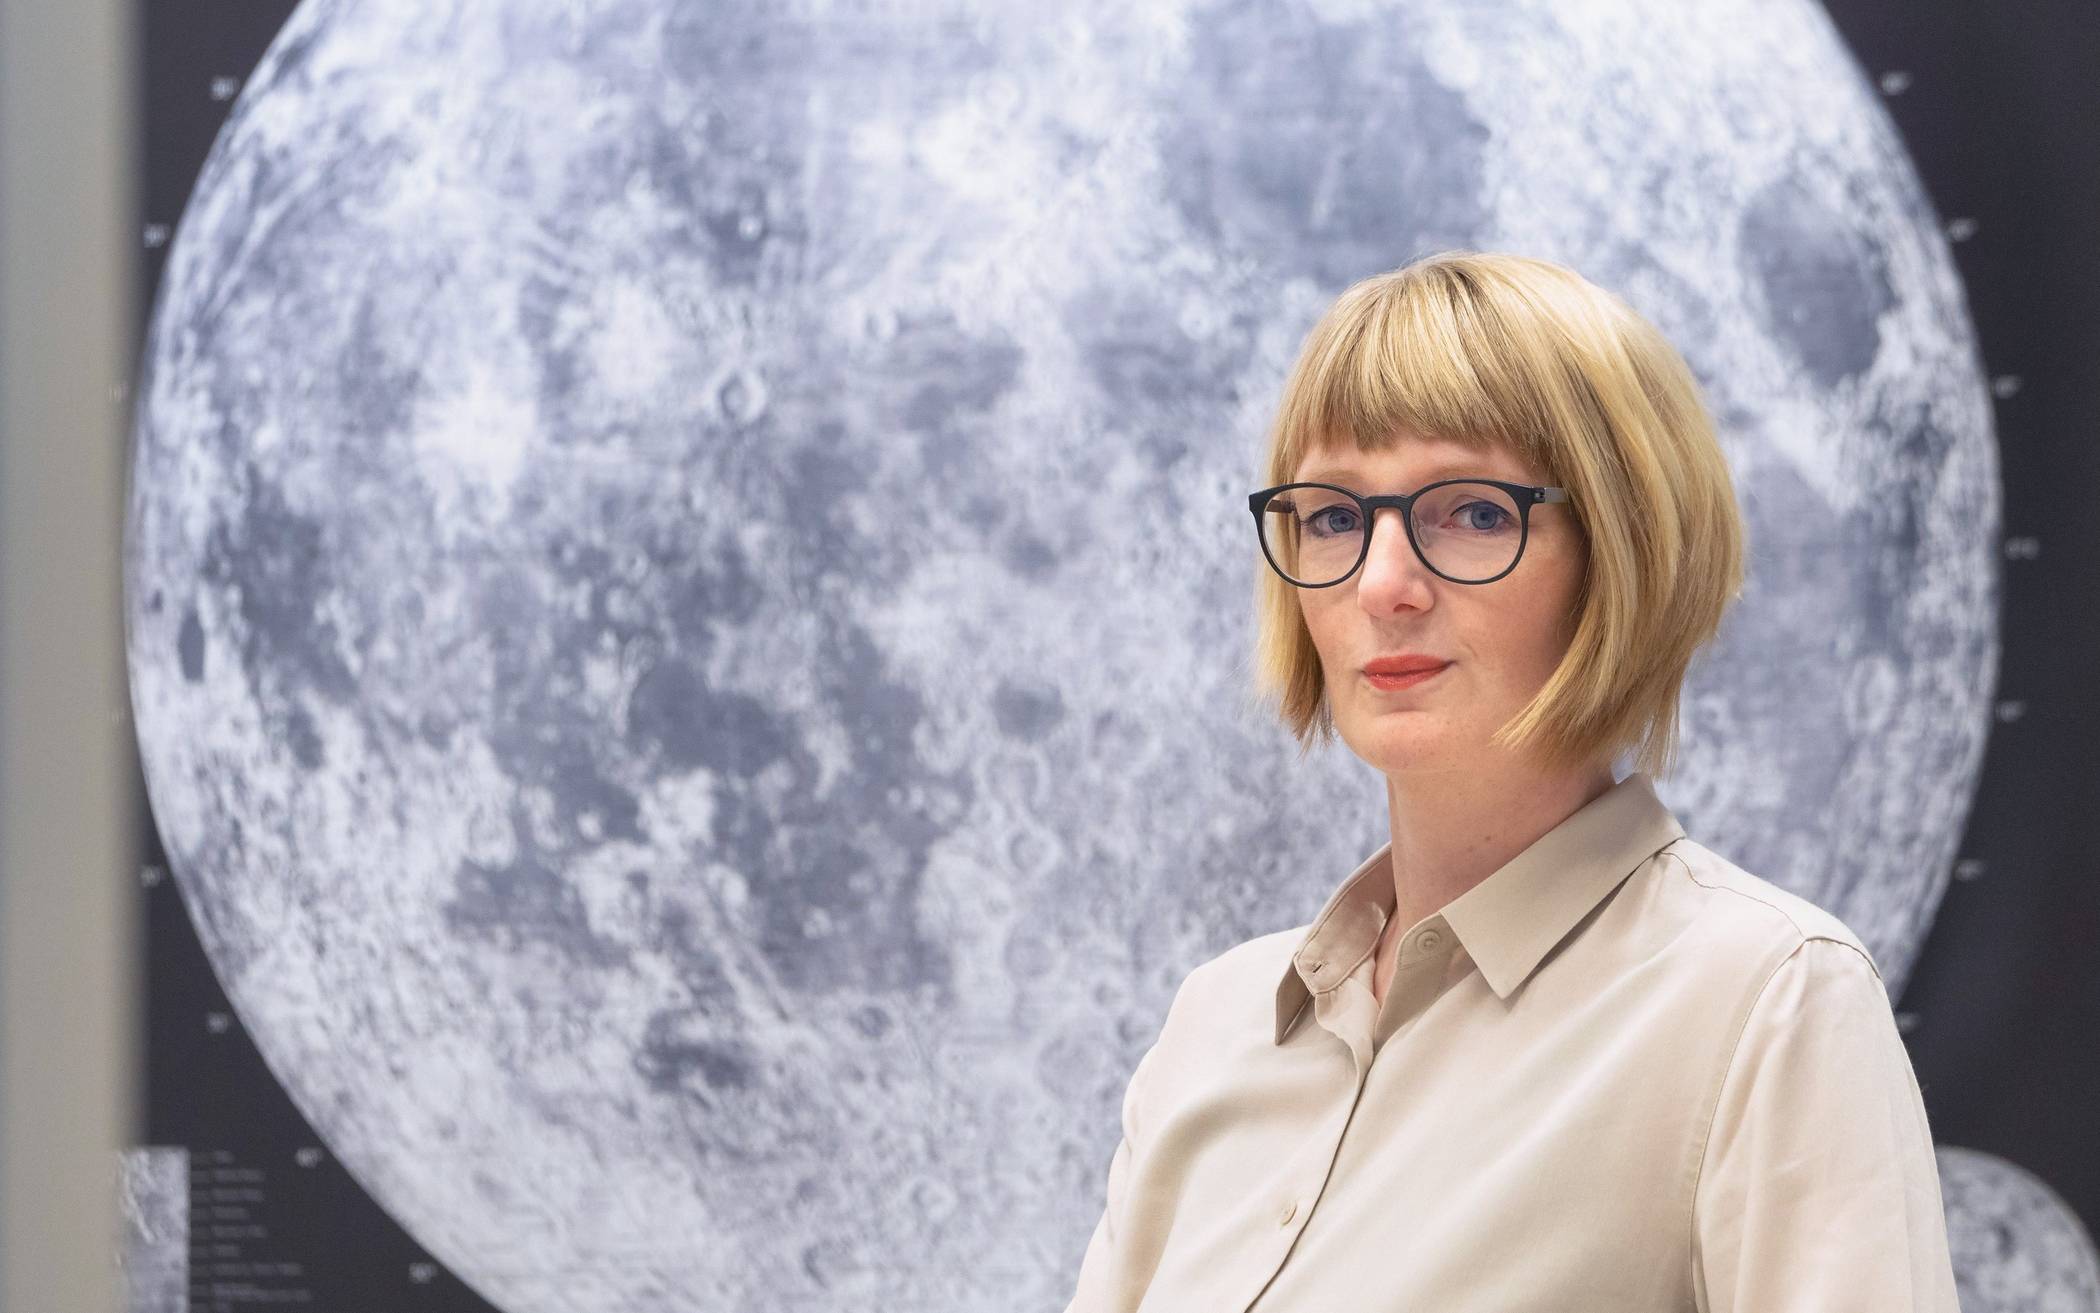  Die Neusser Bestattermeisterin Anna Lutter organisiert eine Bestattung auf dem Mond. 